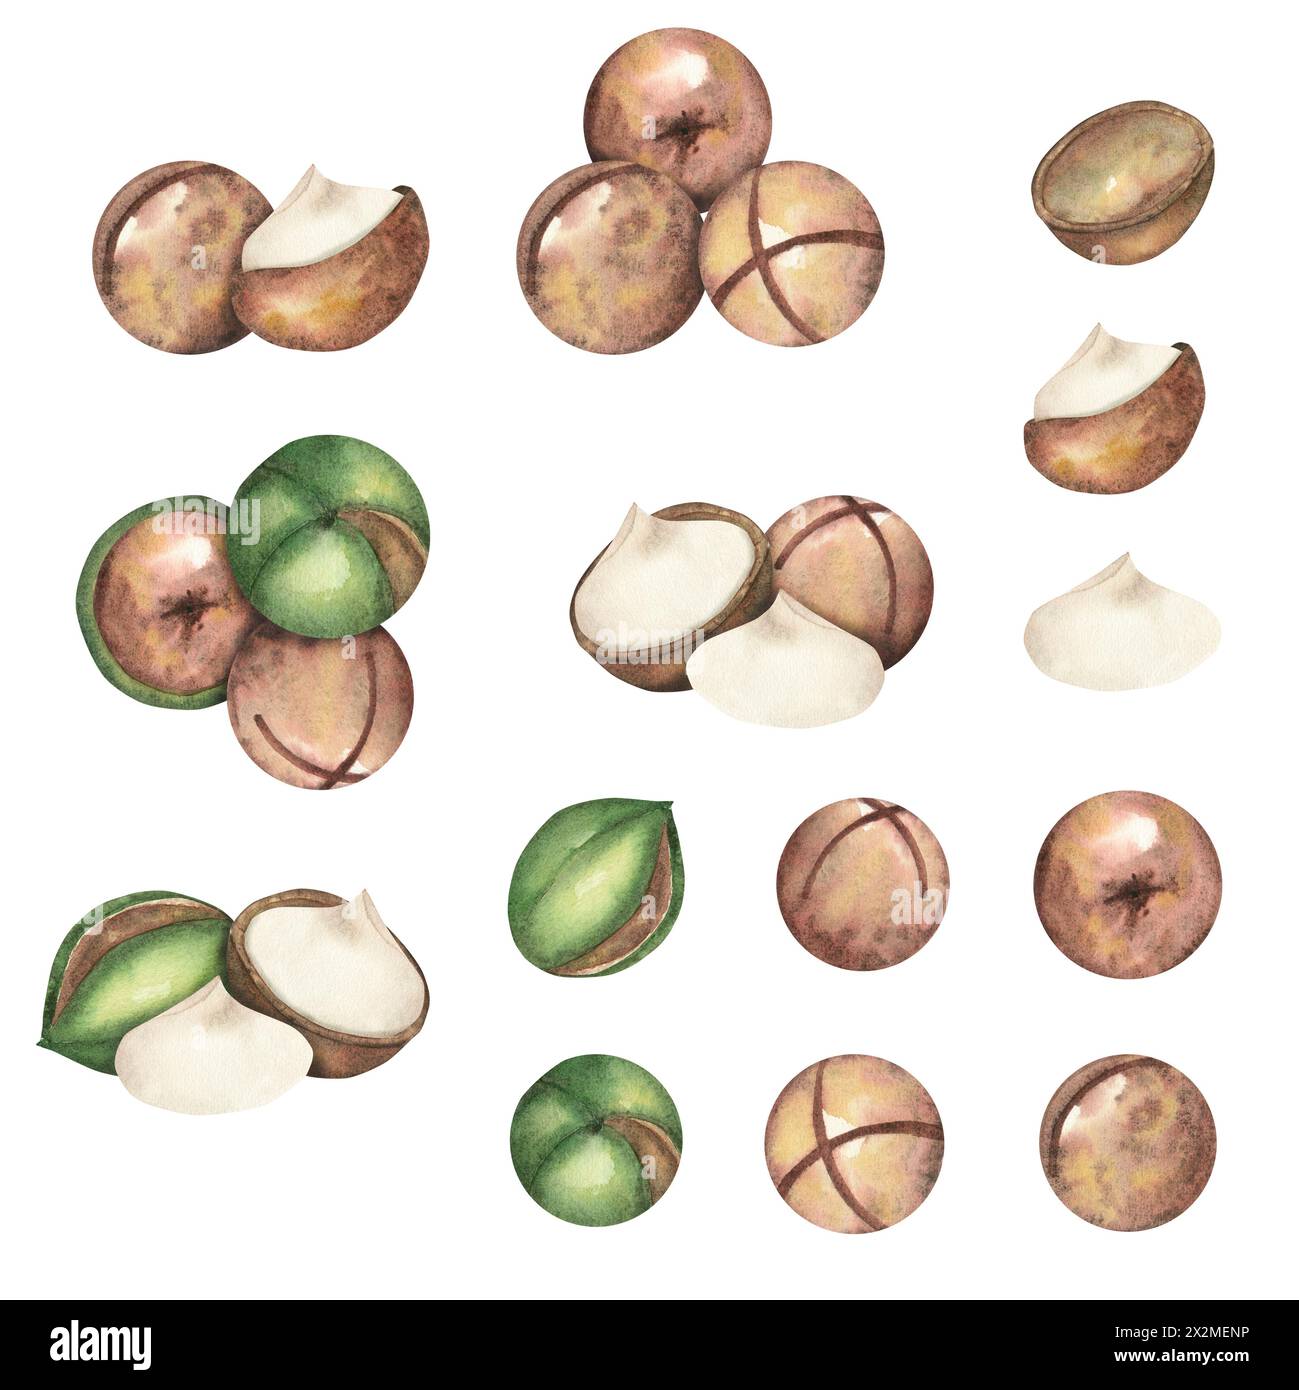 Noix de macadamia sur fond blanc, une composition de plusieurs noix. Le macadamia. Nourriture, collations, noix brune, gros plan. Illustrations aquarelles Banque D'Images